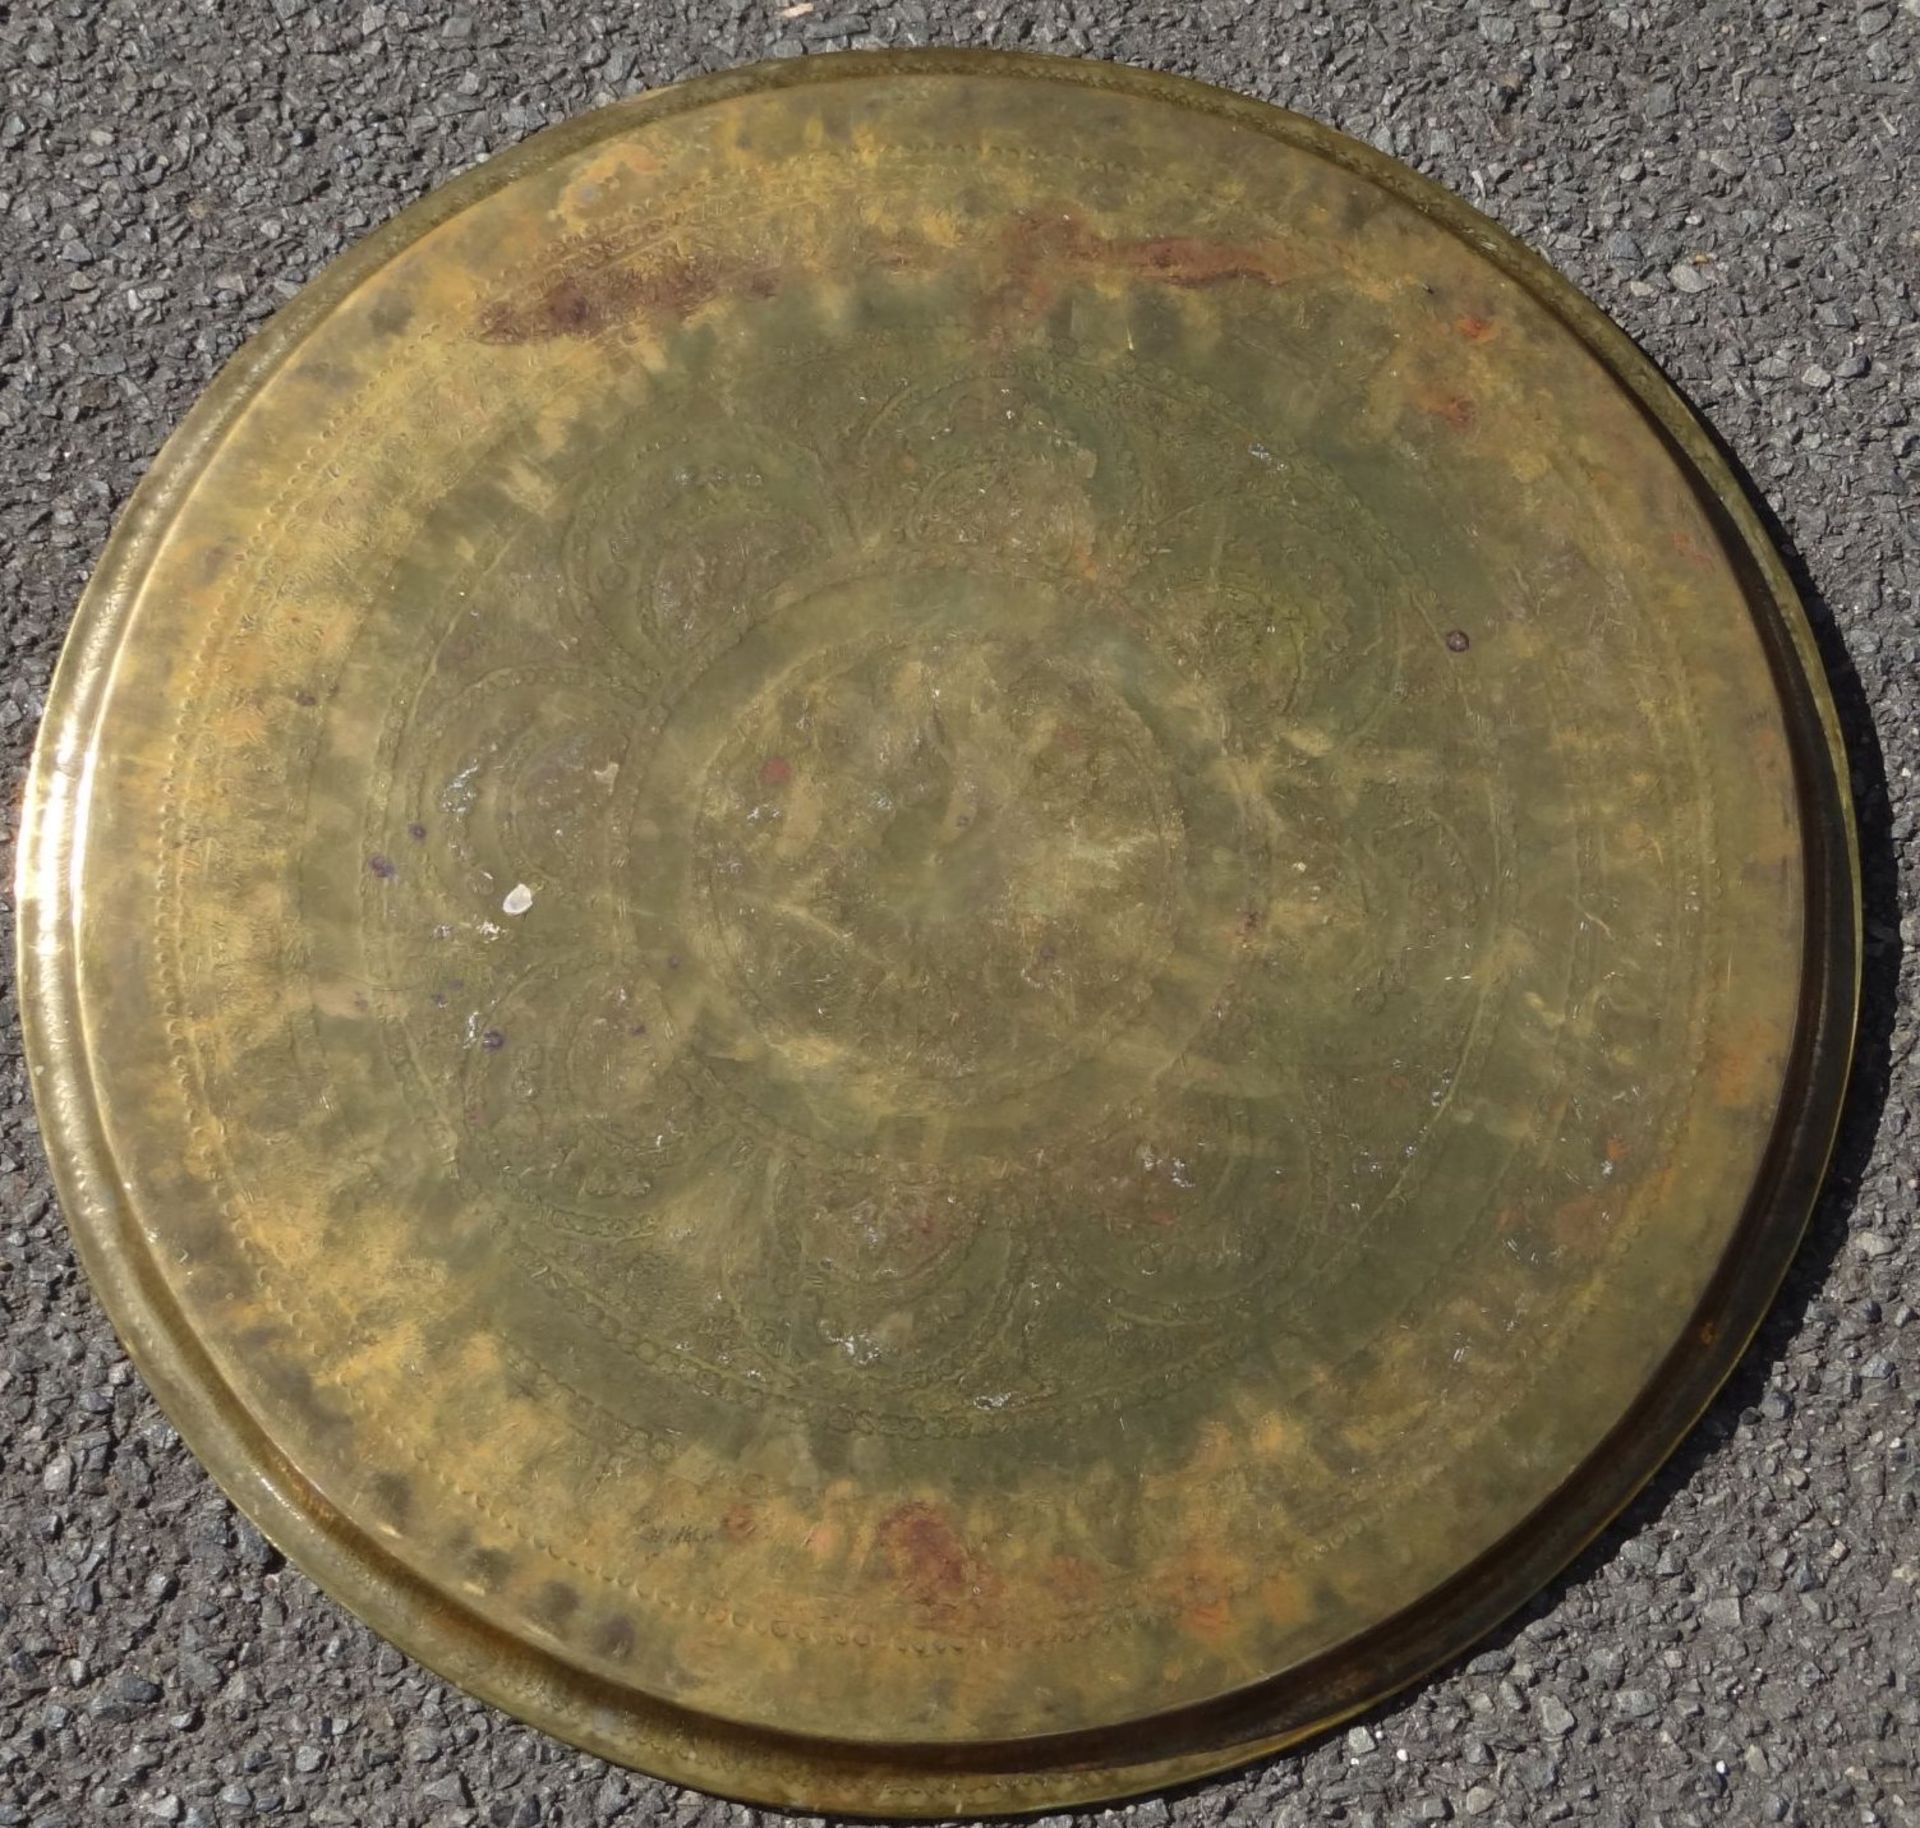 grosses massives rundes Tablett, Messing, wohl von Beduinentischchen, D-58 cm - Bild 3 aus 3